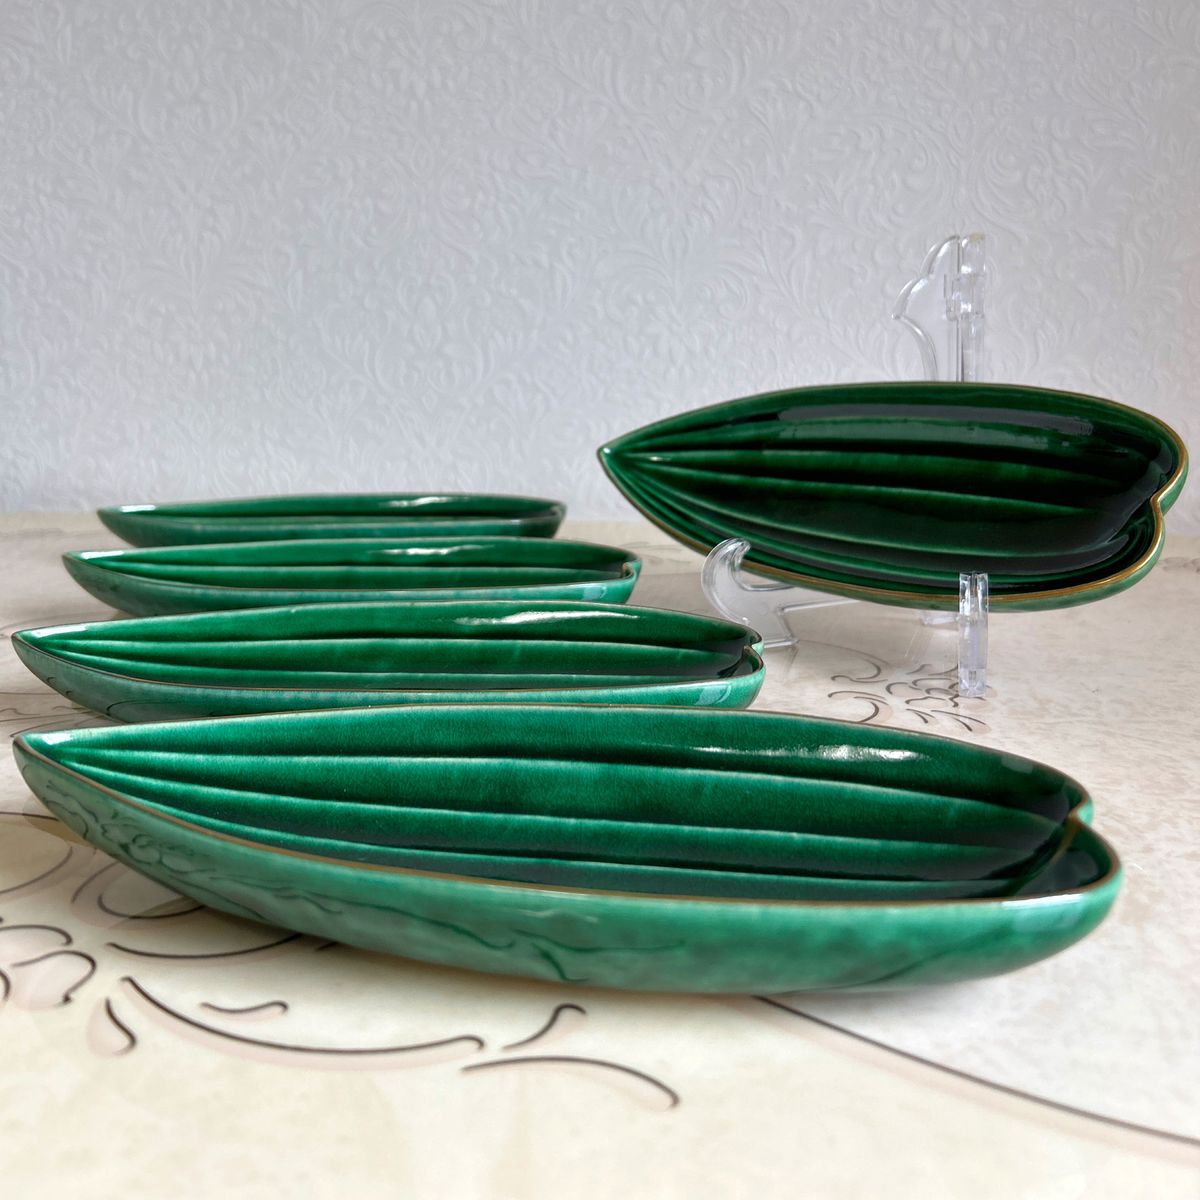 たち吉特選 青嵐 笹型 長皿揃 5枚セット 笹舟型皿 刺身皿 織部 和食器